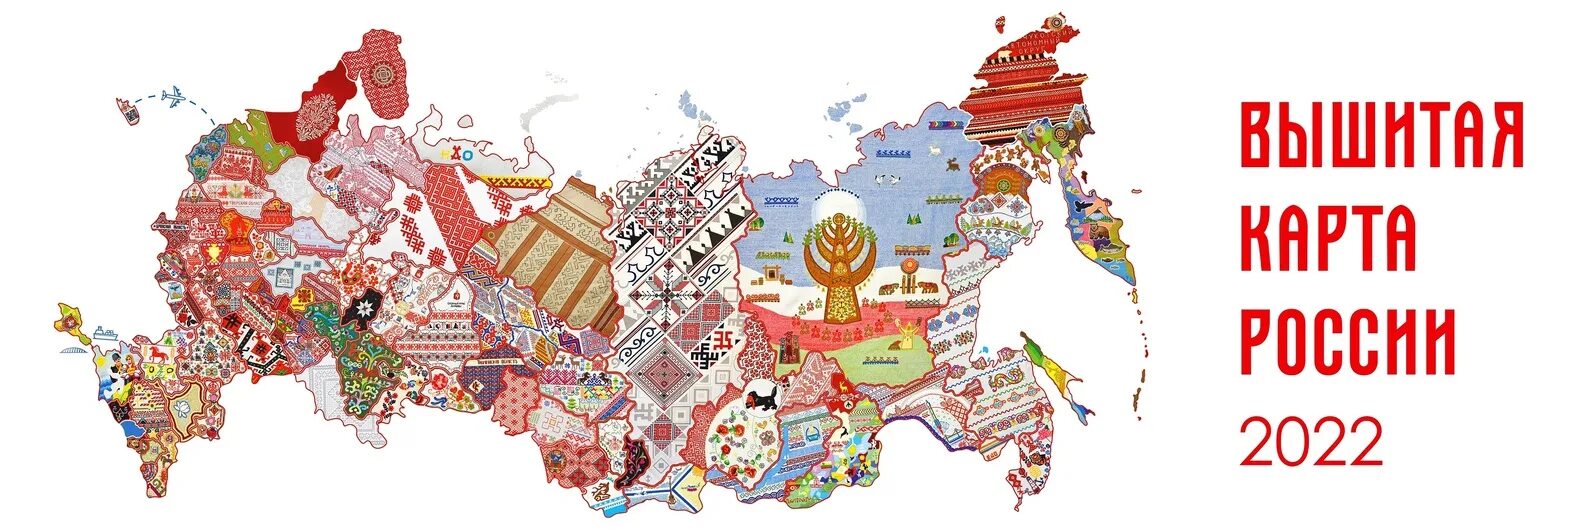 Государственная национальная карта. Вышитая ката России. Desibnfz rfhne hjccbb. Вышитая карта России. Вышитая карта России проект.